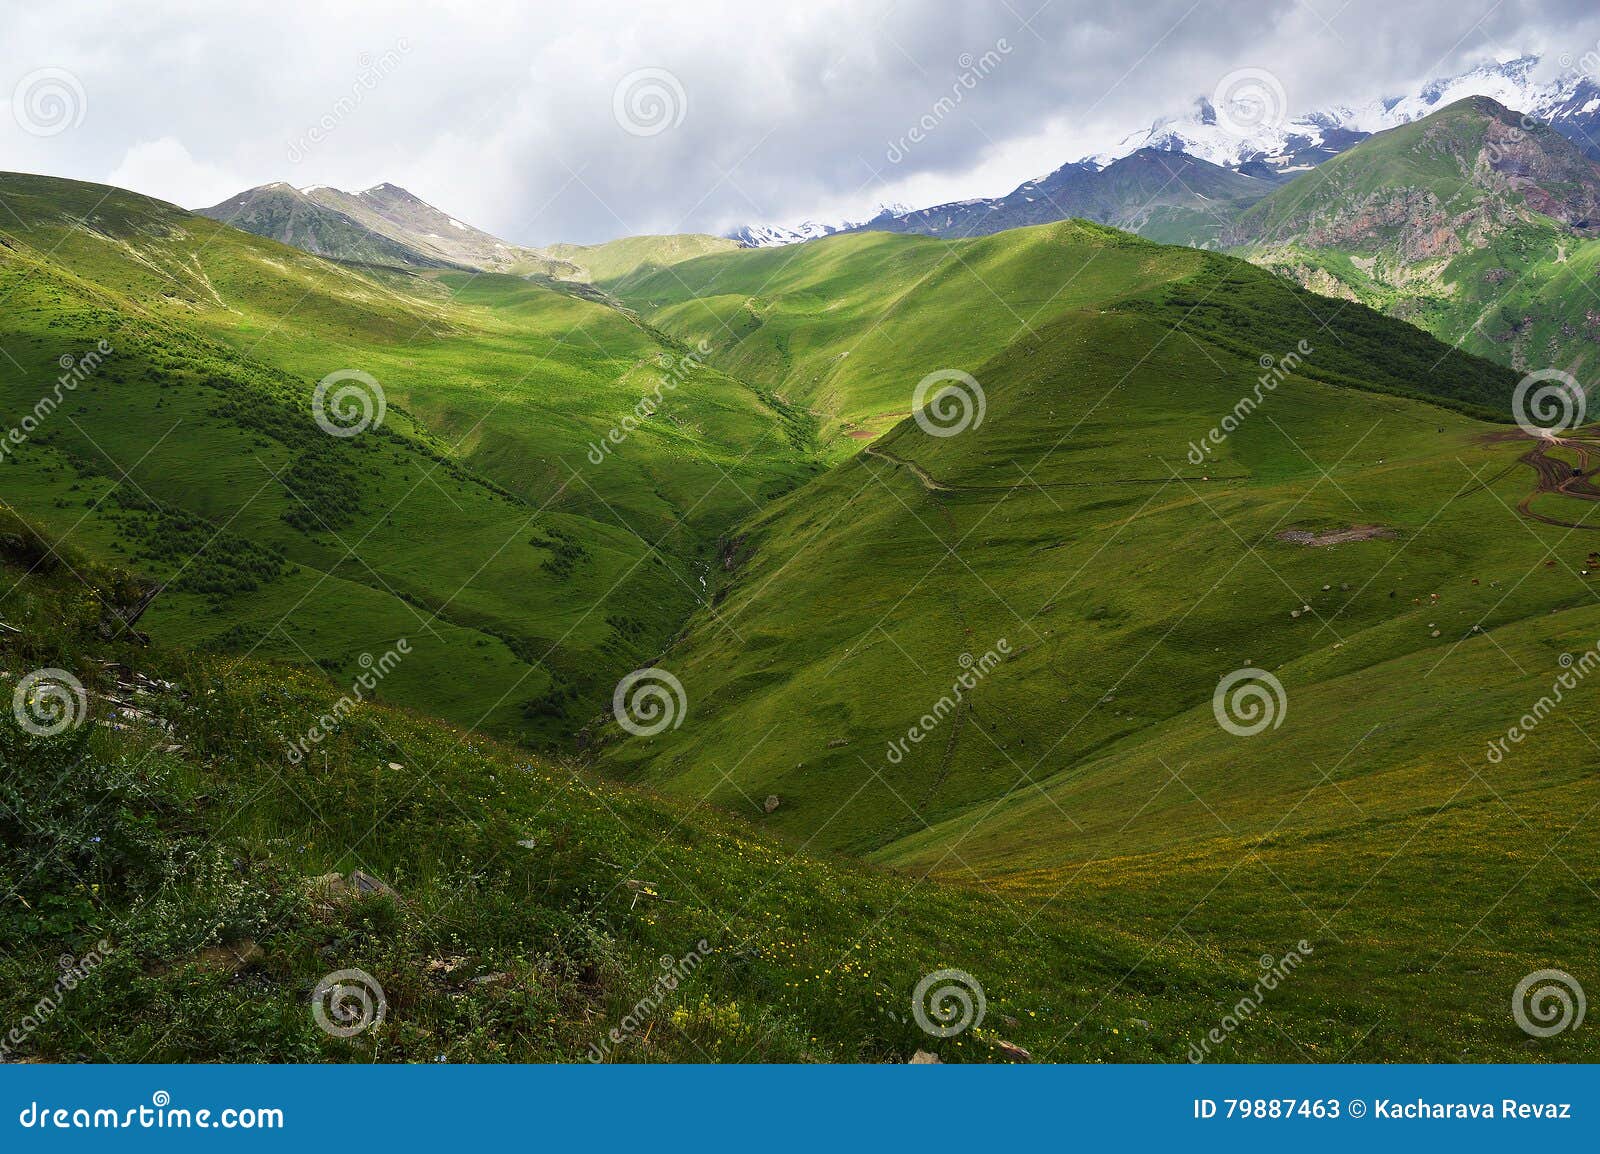 the splendor of the caucasus mountains